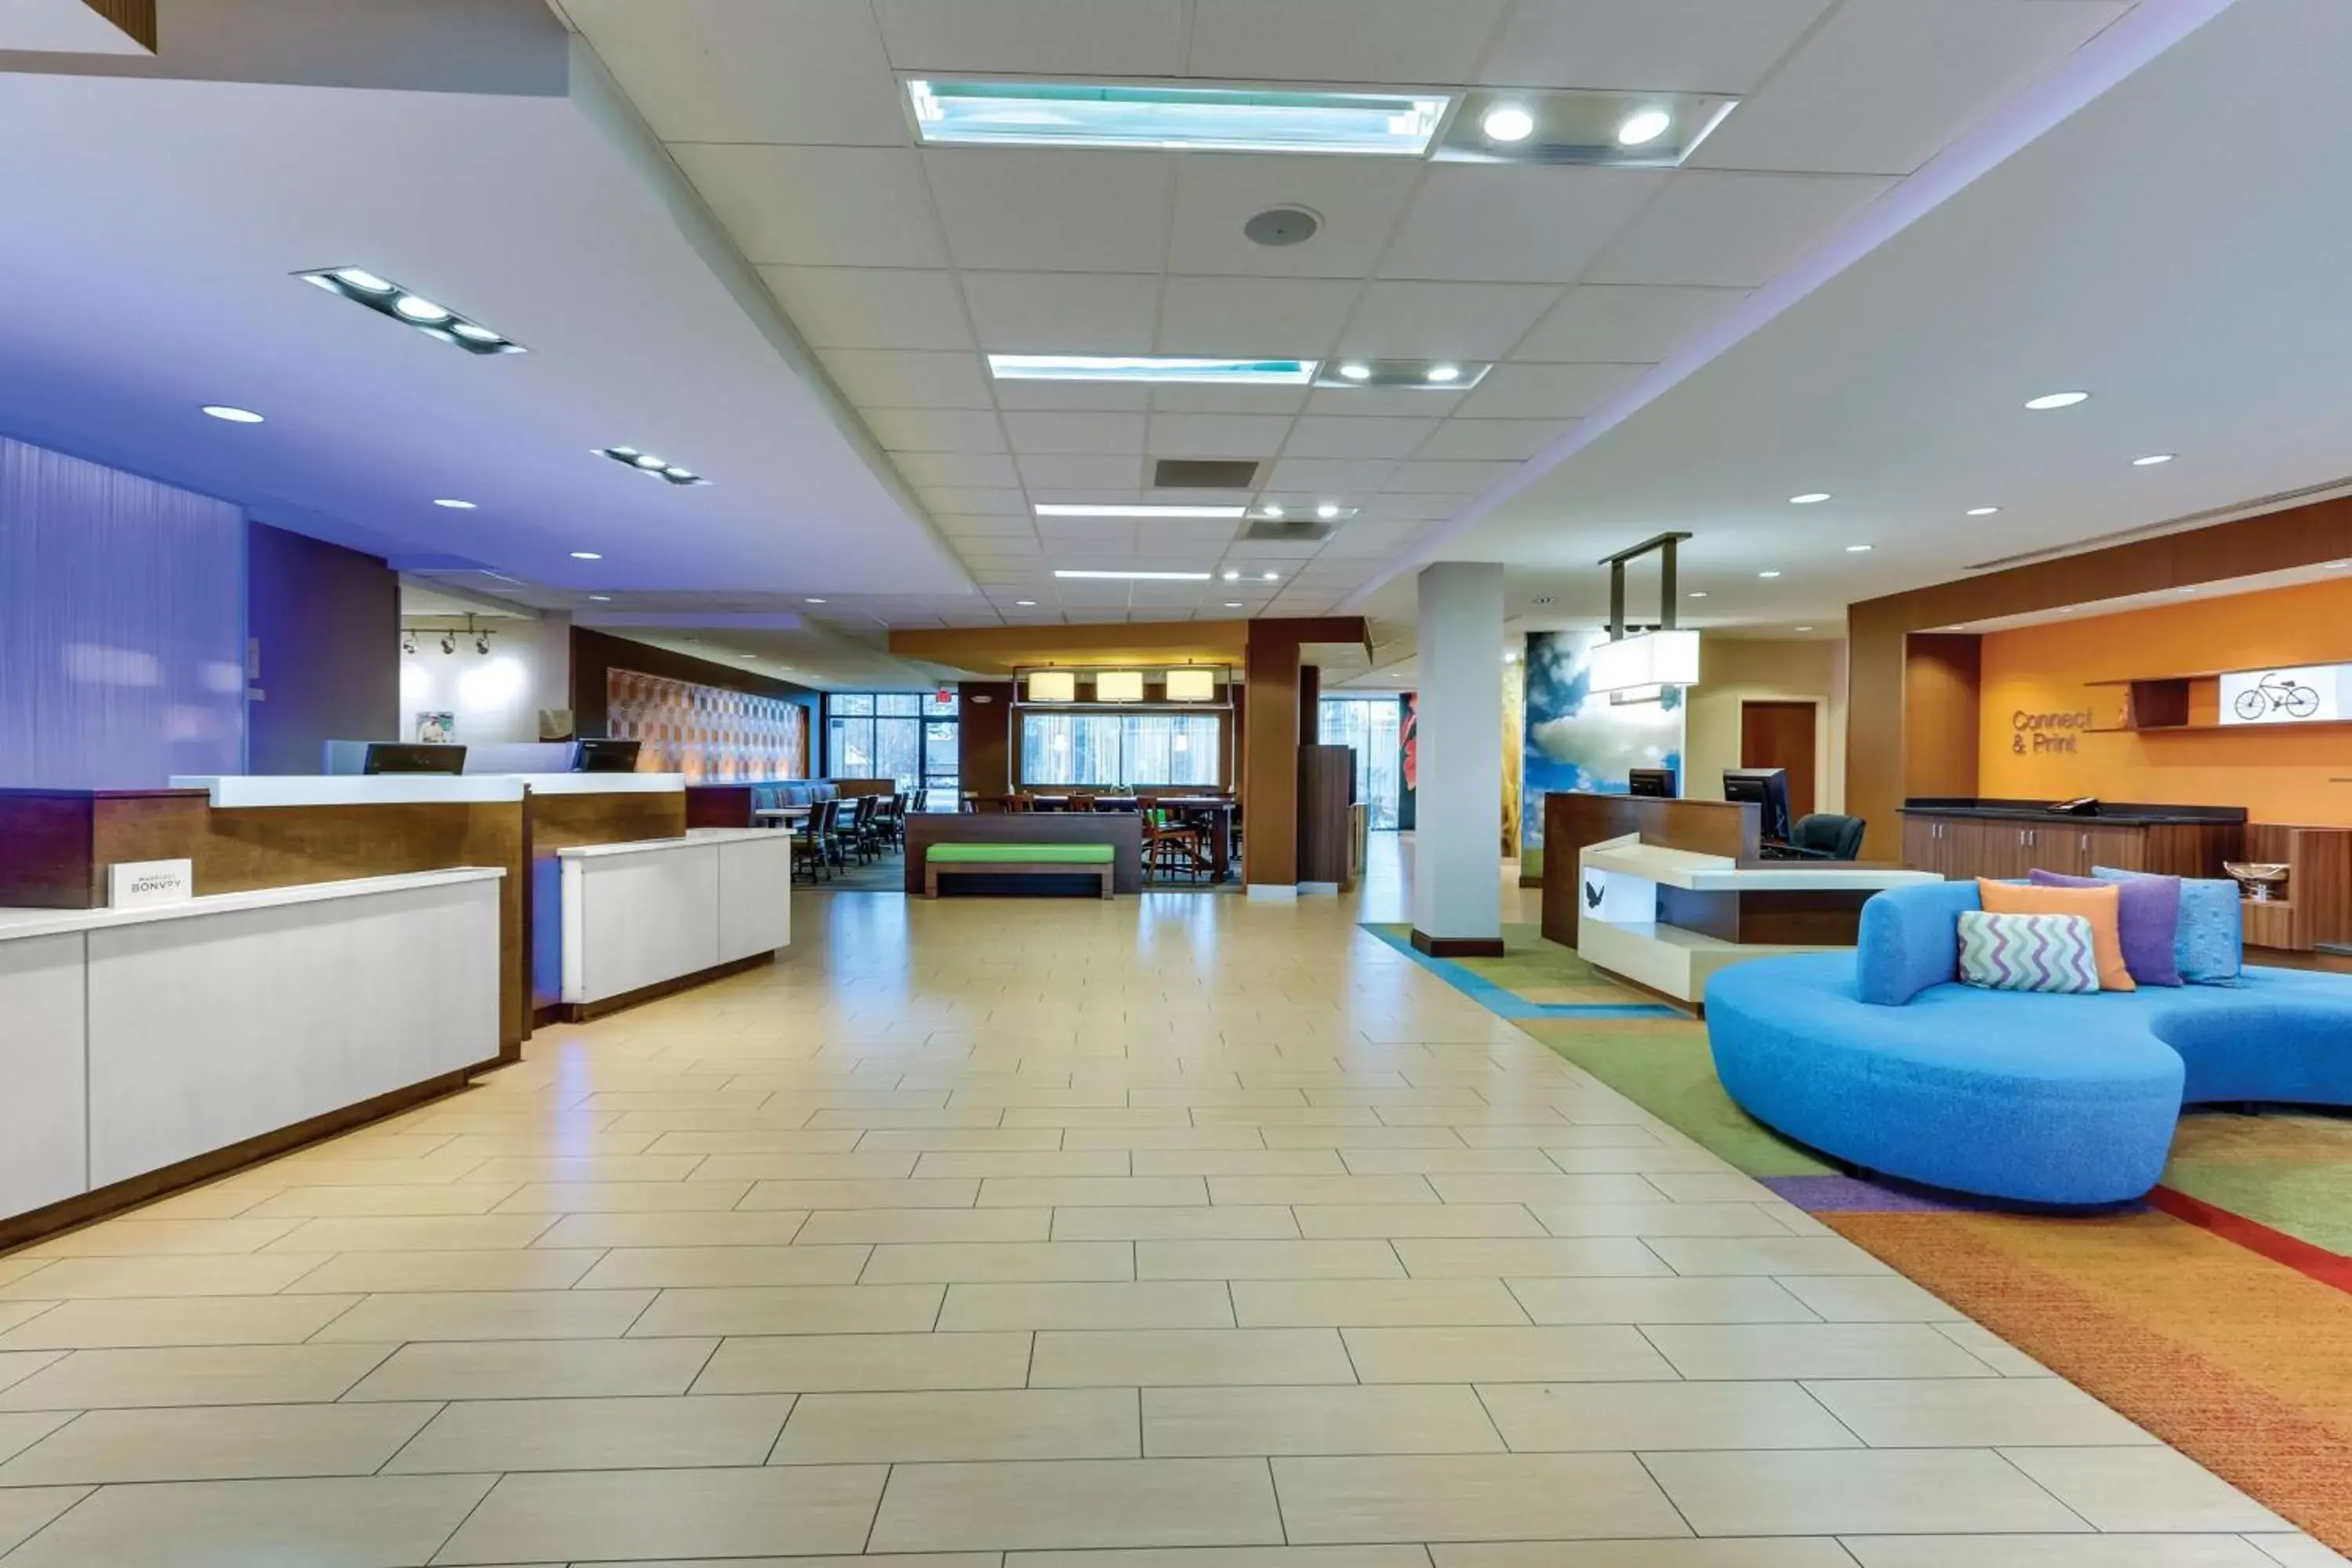 Lobby or reception, Lobby/Reception in Fairfield Inn & Suites by Marriott Dunn I-95